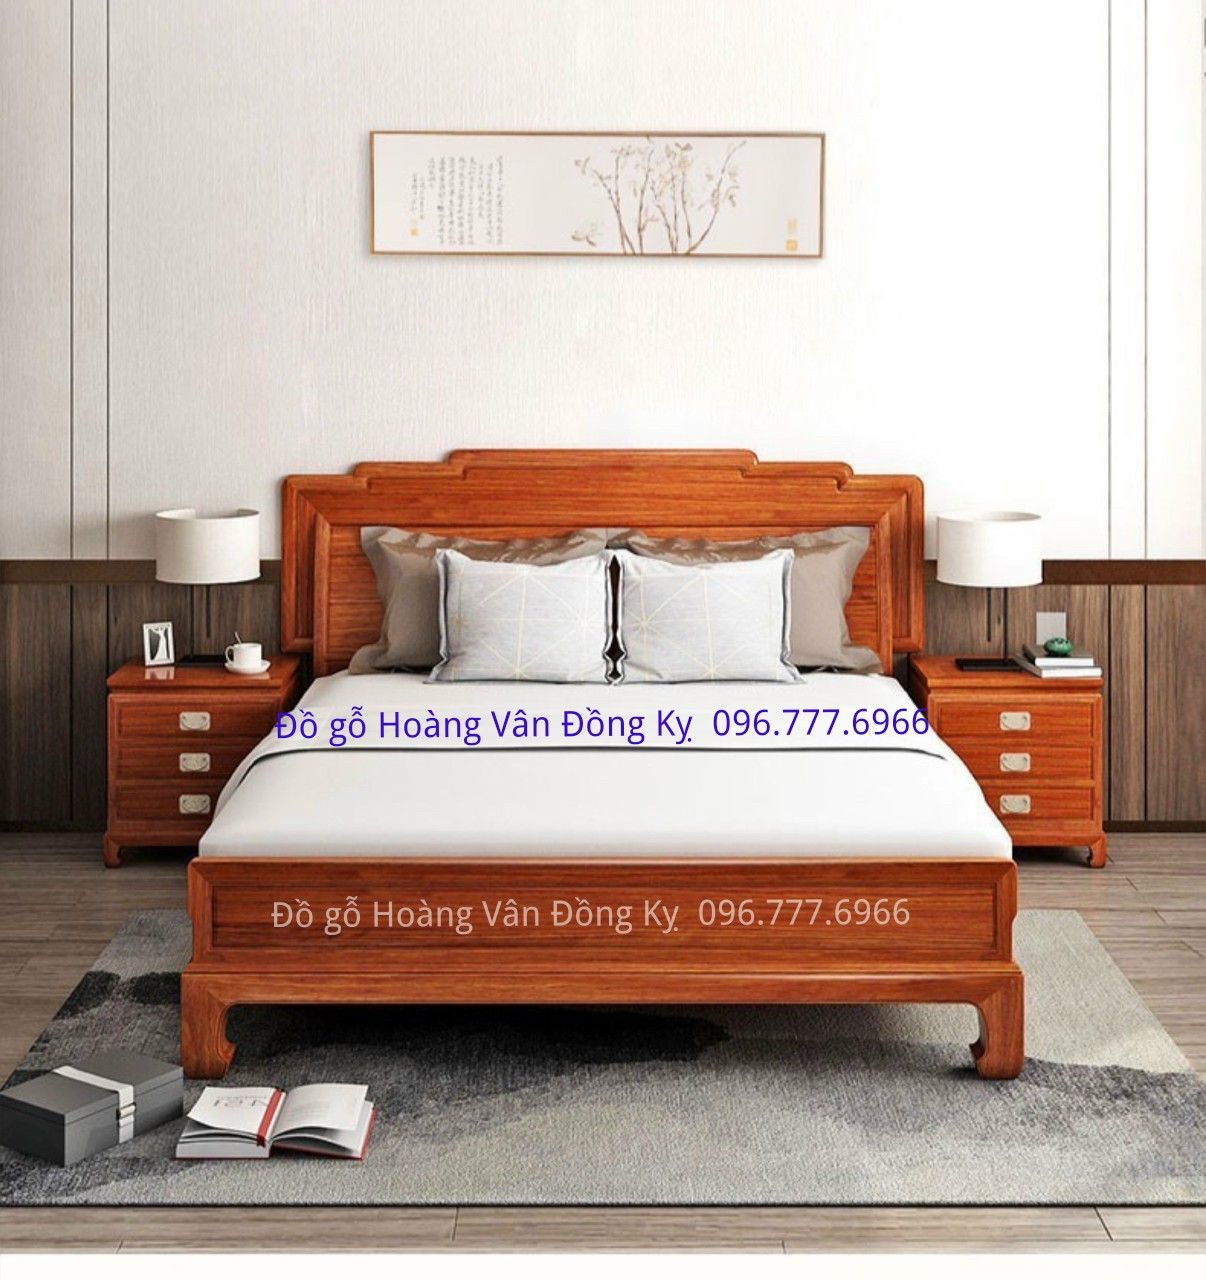 Mẫu giường tân cổ điển bọc da đẹp gỗ đồng kỵ GN88 – Đồ gỗ Hoàng Vân